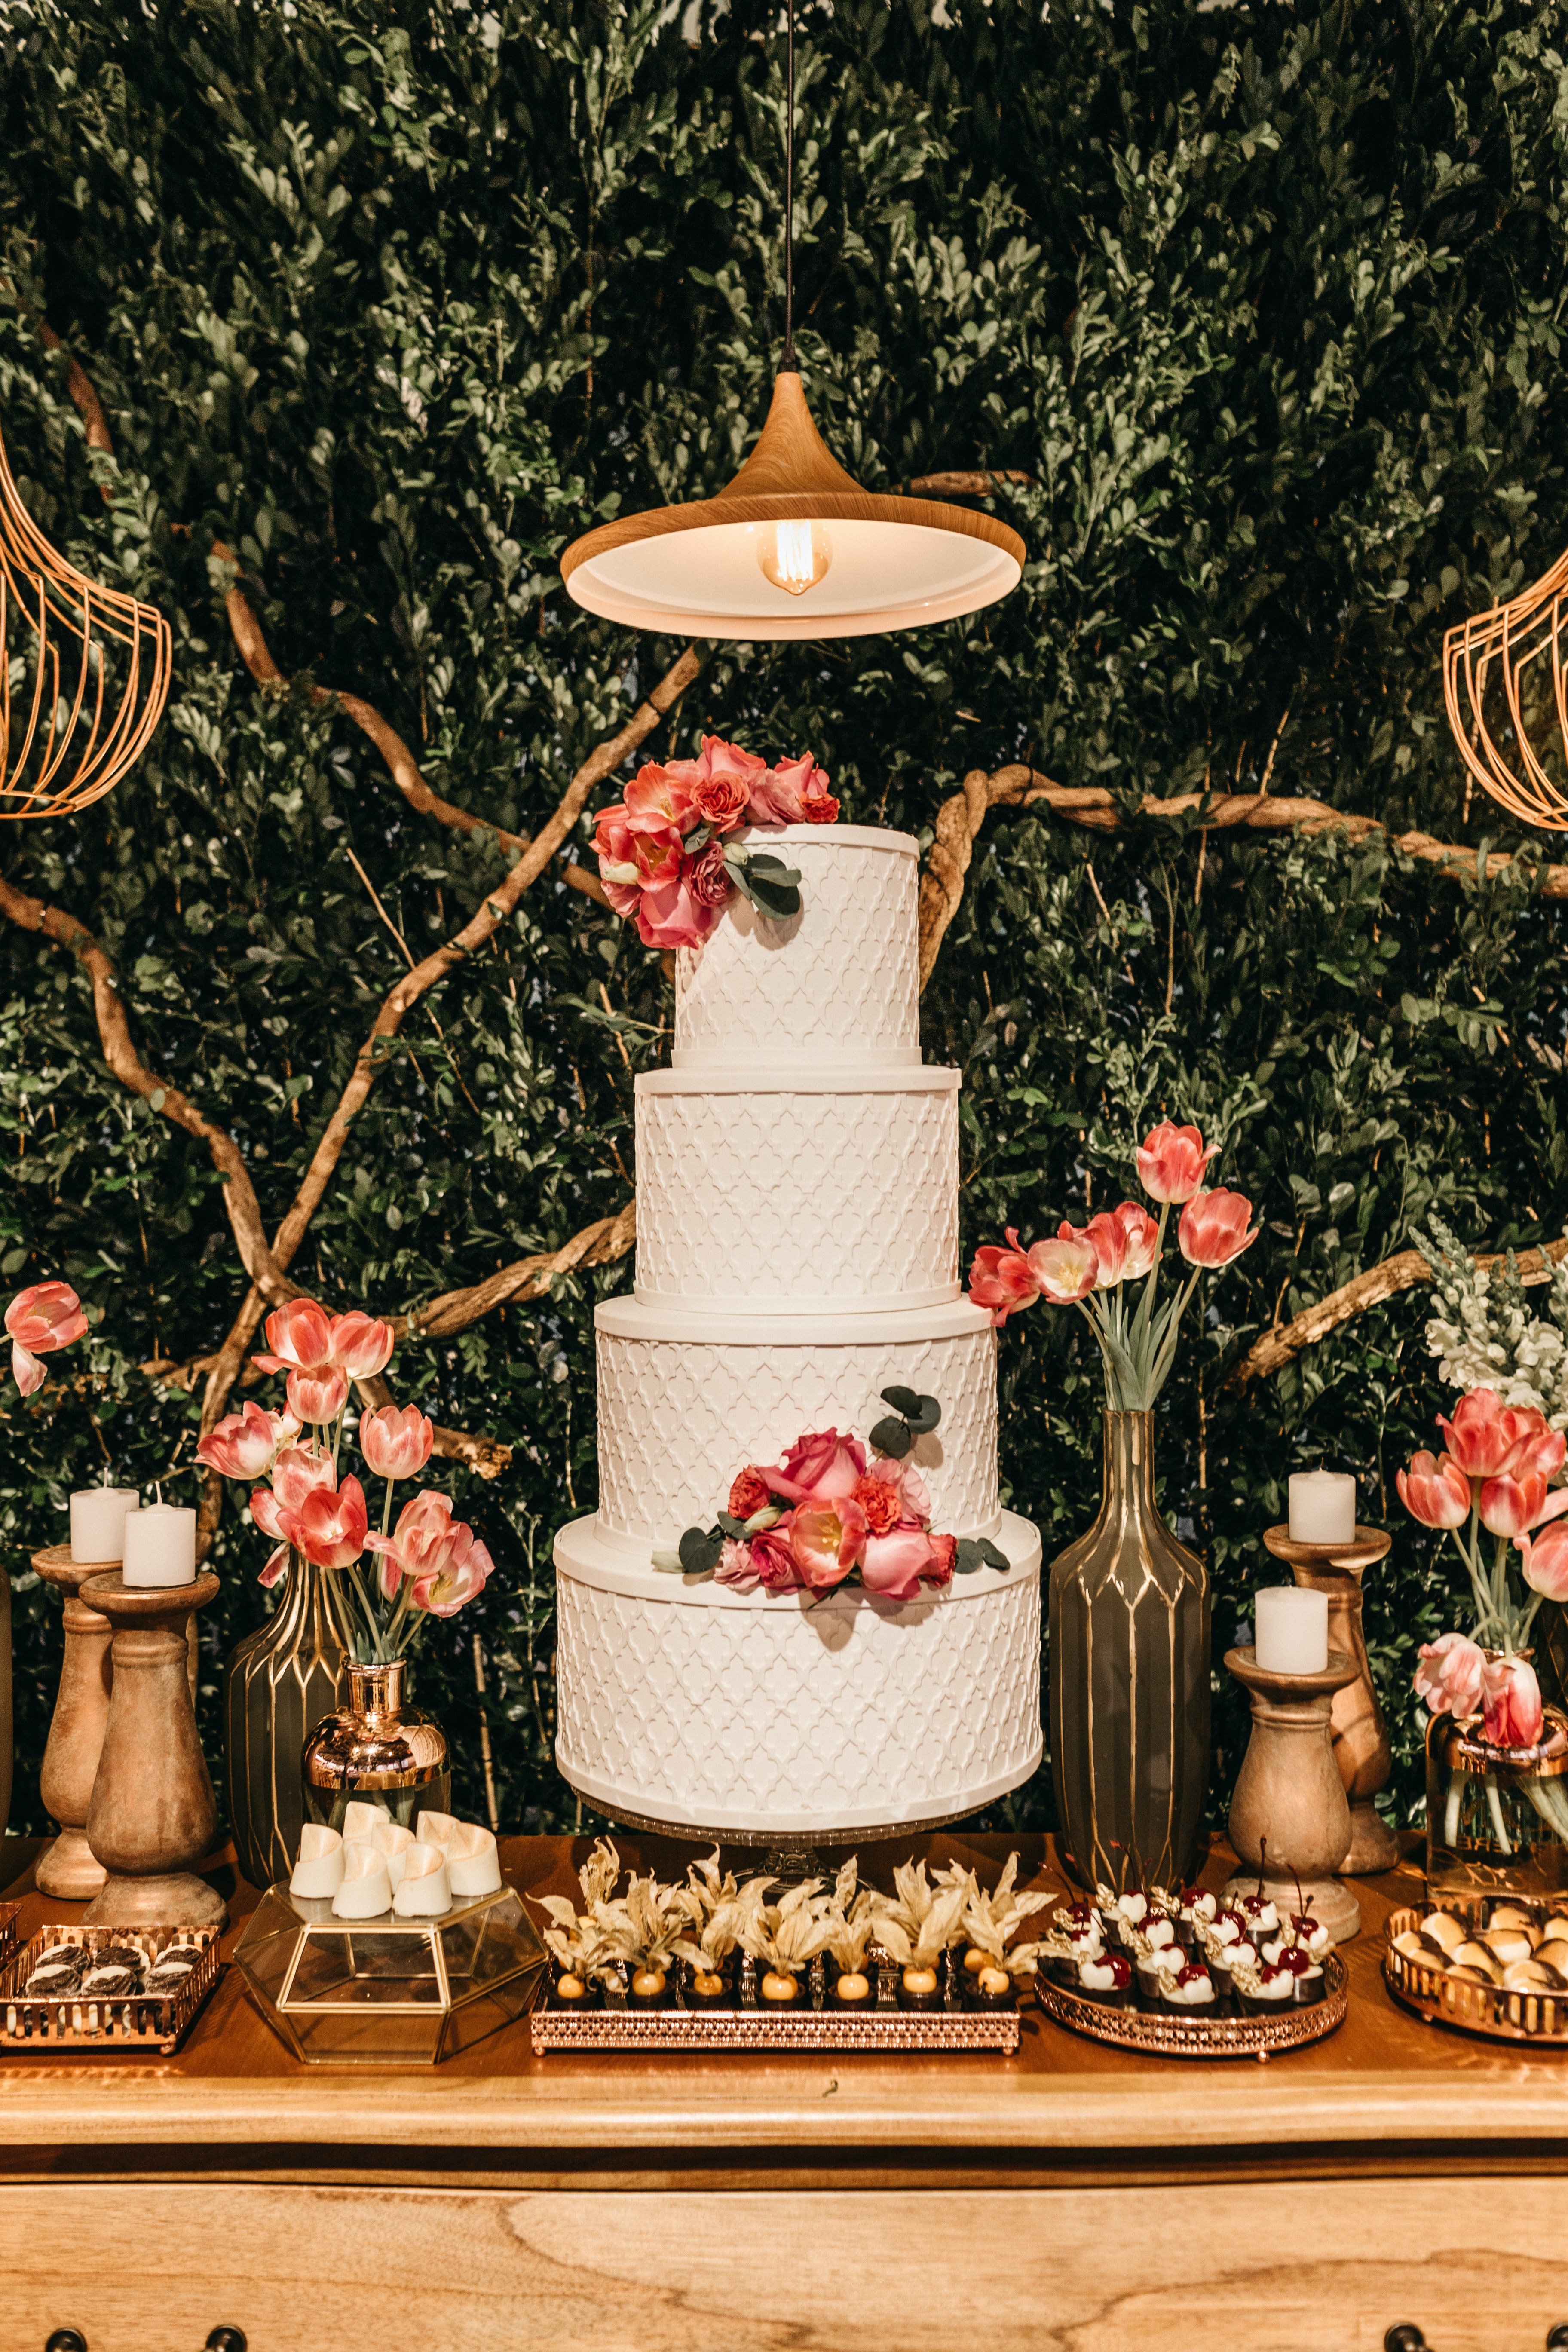 Un gâteau de mariage. | Source : Pexels